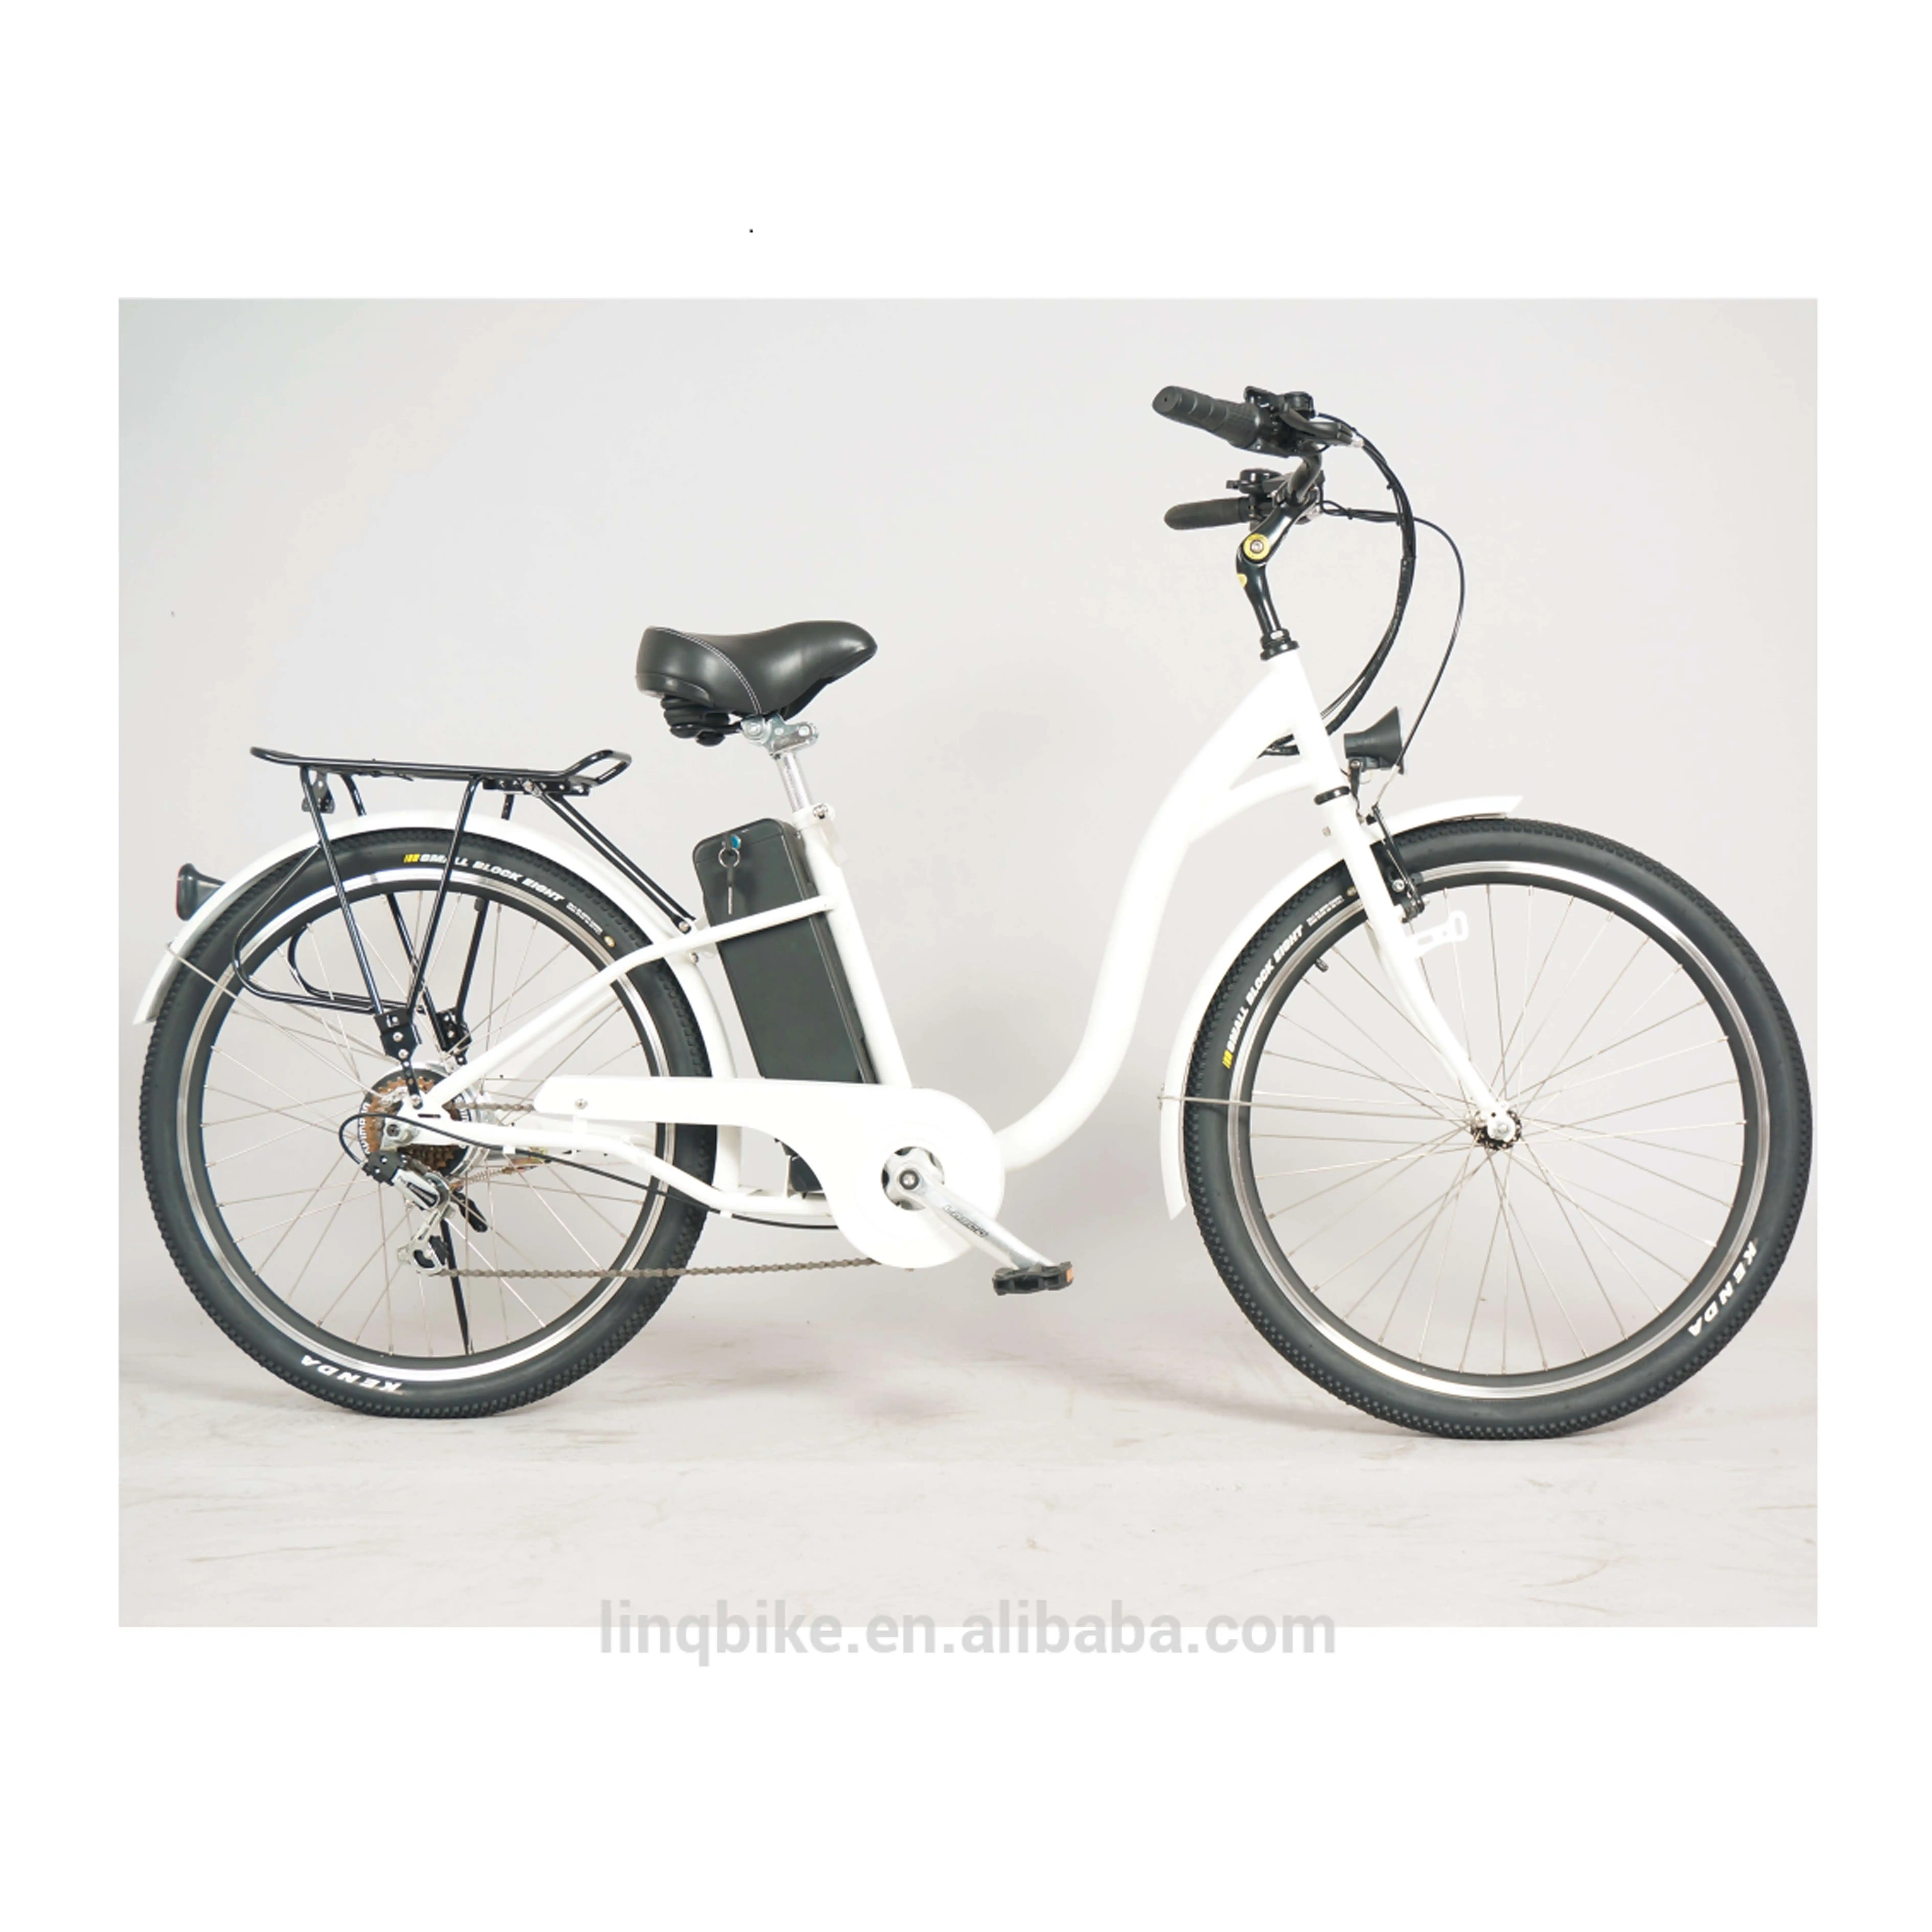 26 pouces vélo électrique vélo électrique cadre en acier 36v 250w avec batterie au Lithium